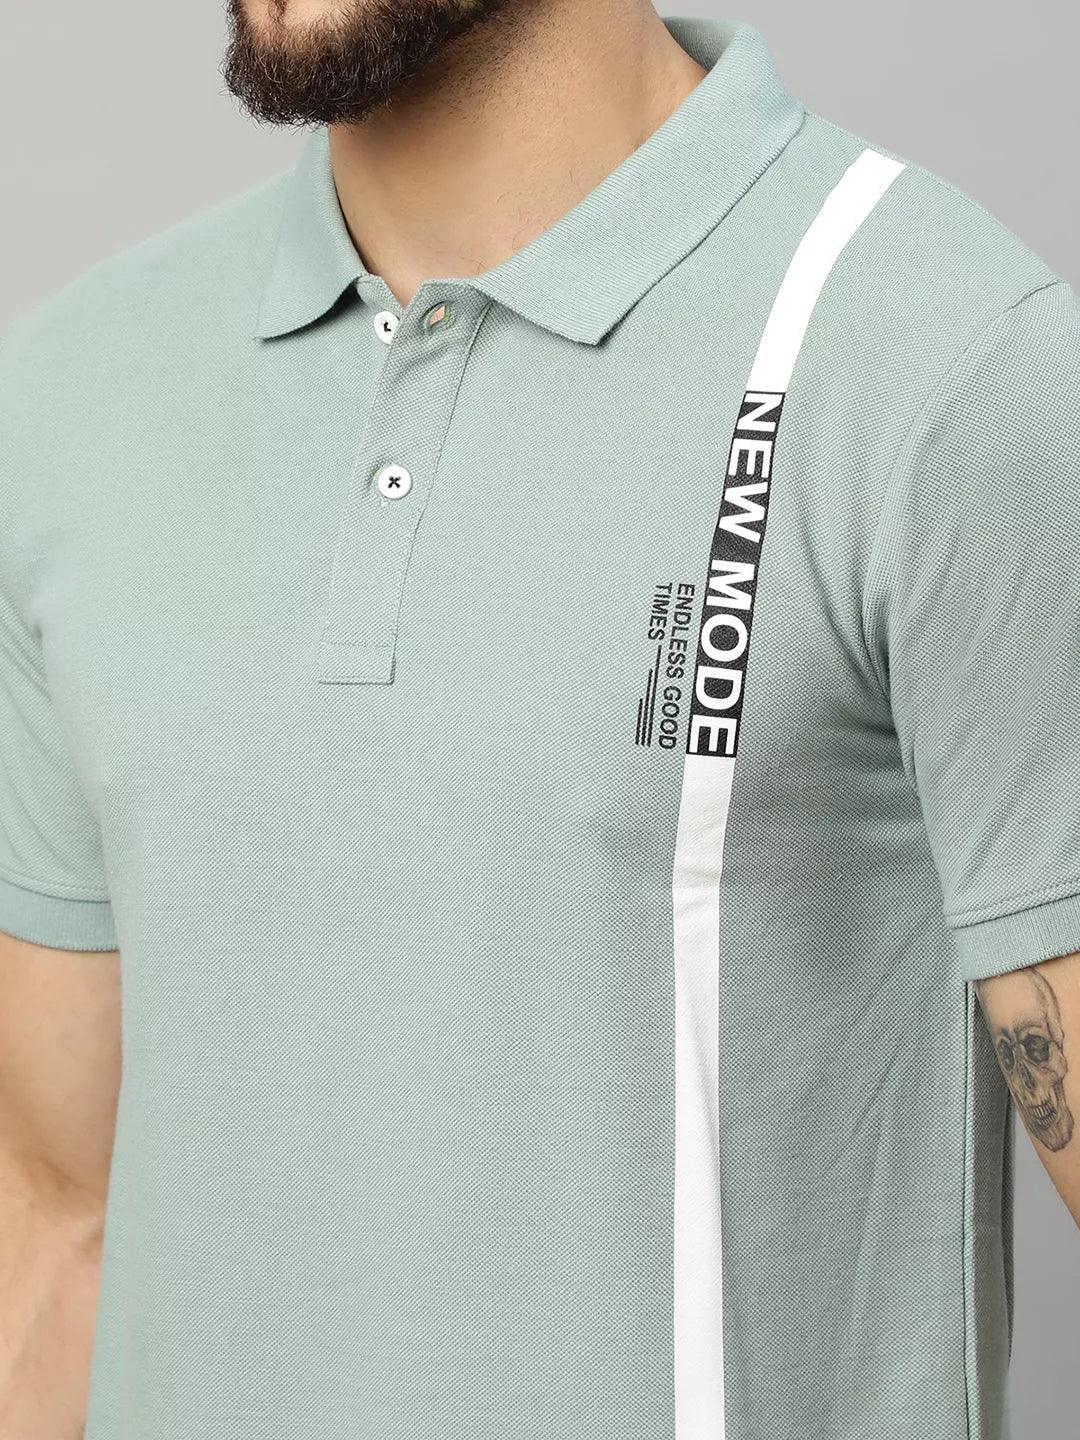 Rodamo Polo Printed T-Shirts (Large) (112130101) - ShopIMO